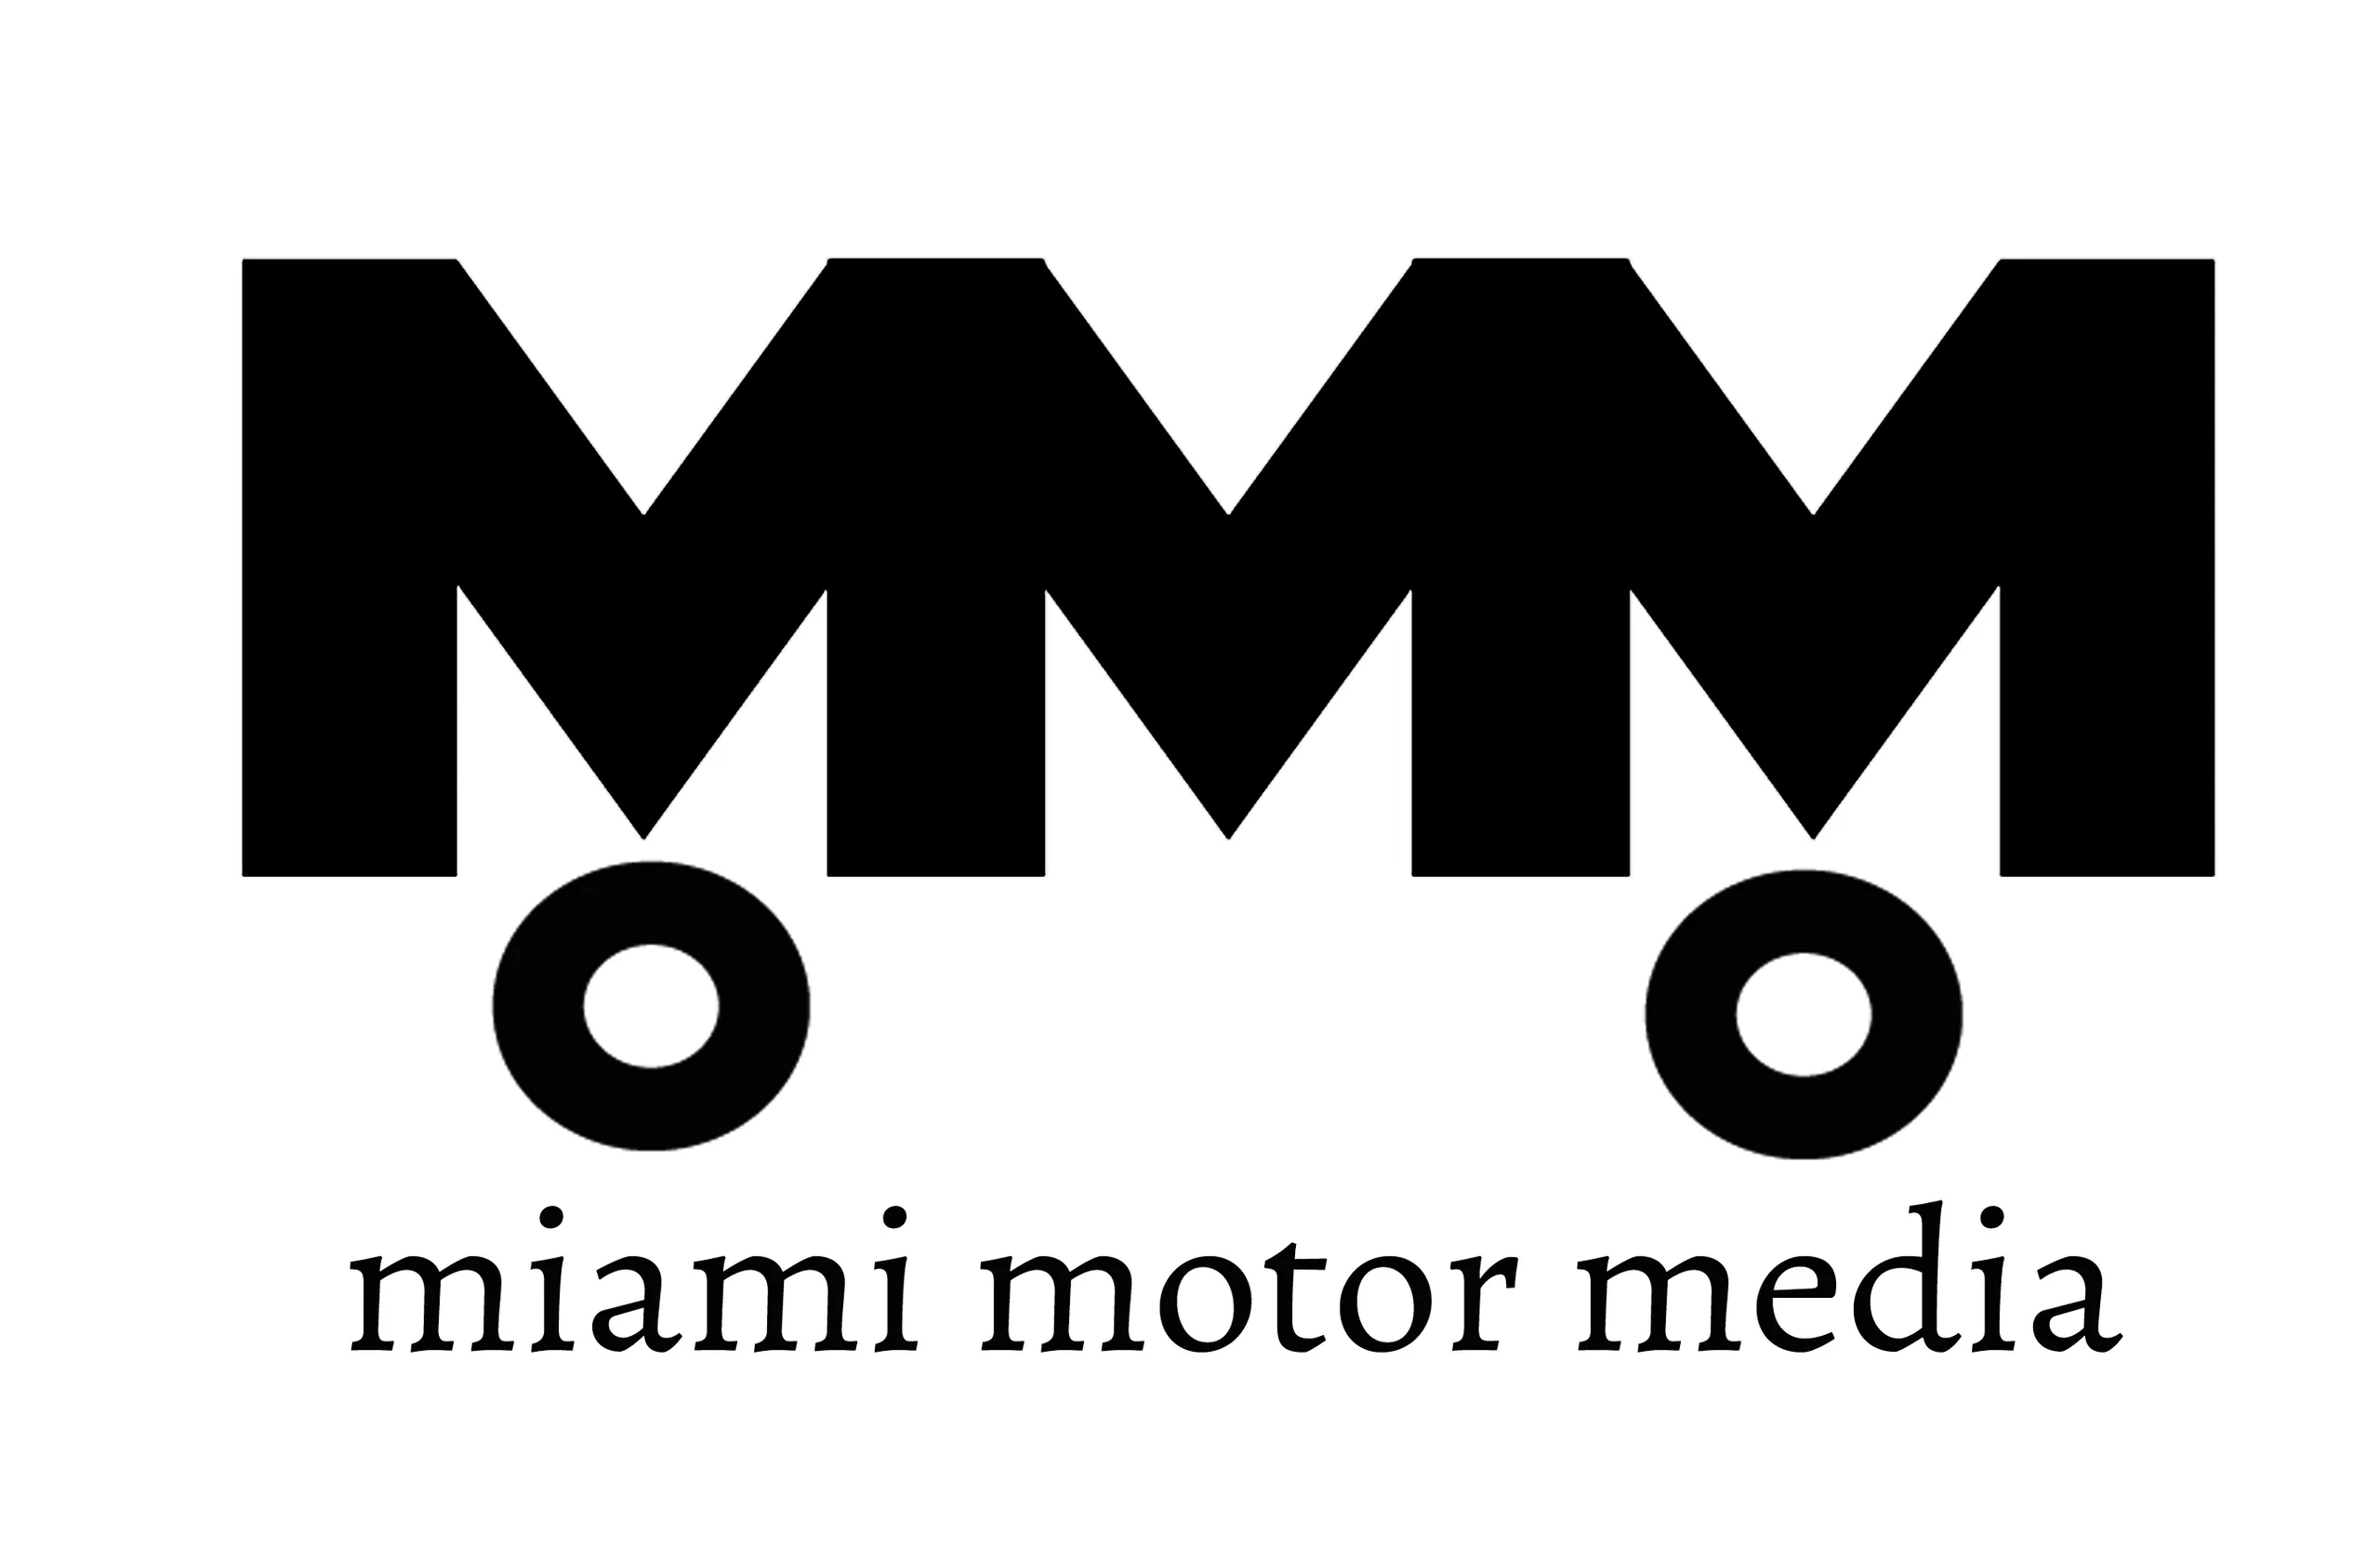 Miami Motor Media 4 Black copy